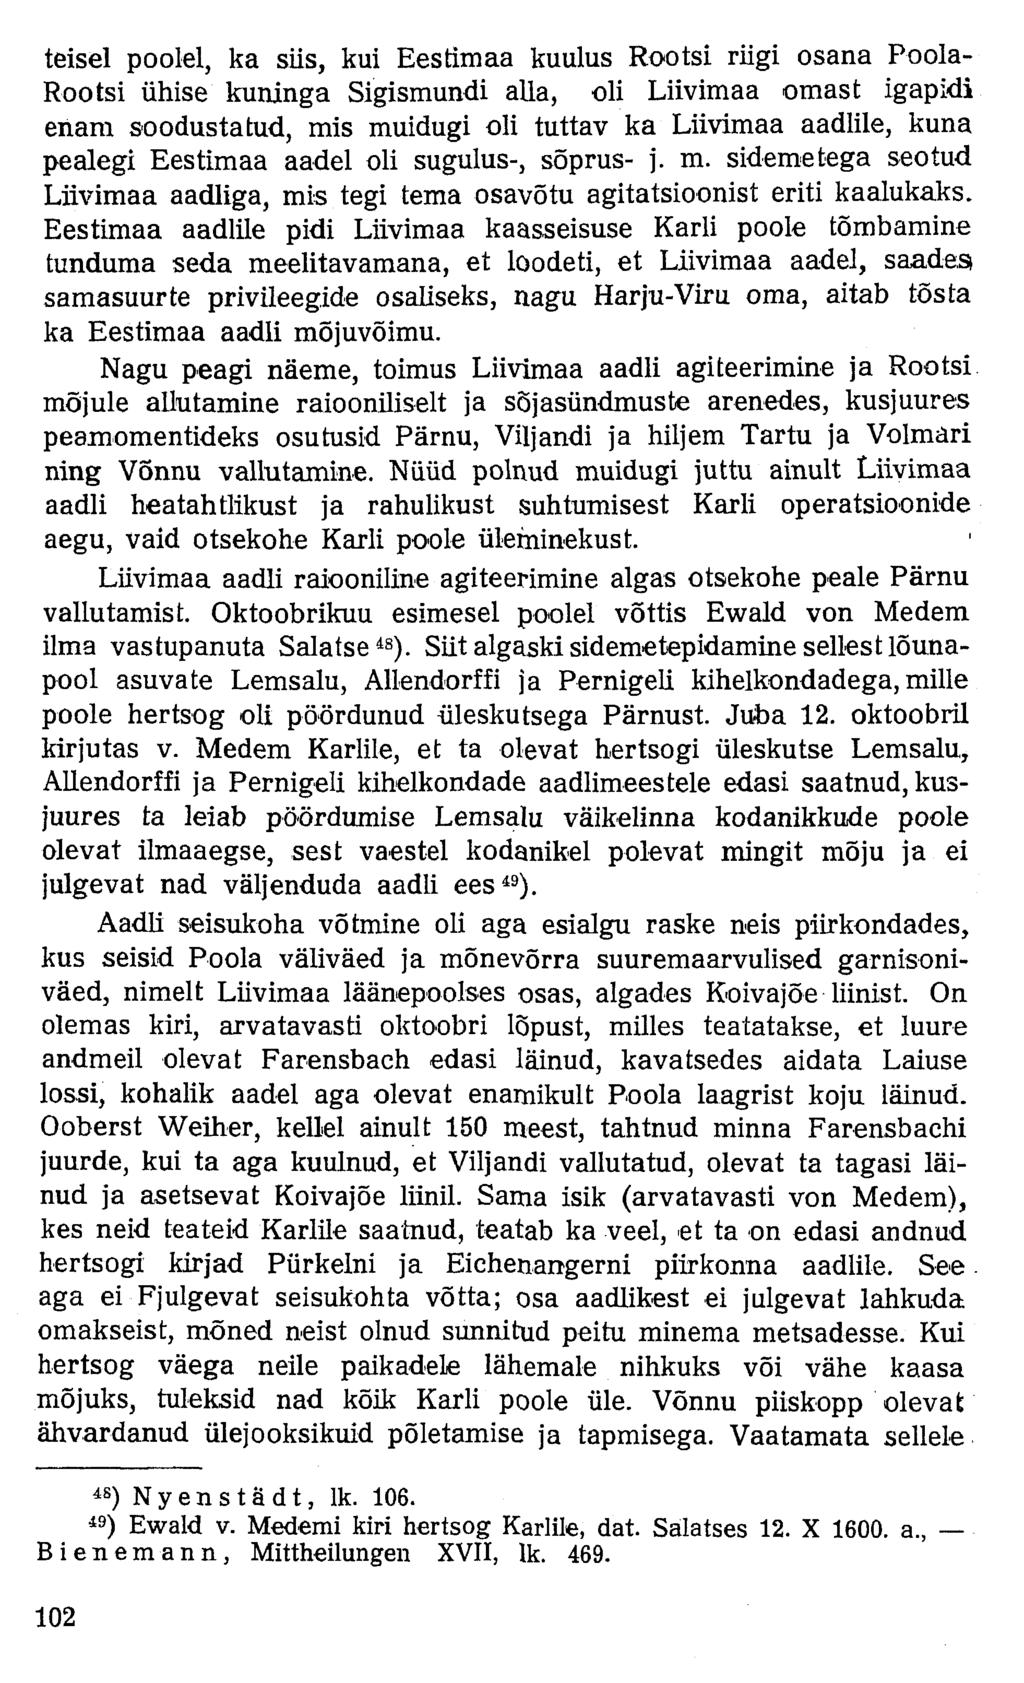 teisel poolel, ka siis, kui Eestimaa kuulus Rootsi riigi osana Poola- Rootsi ühise kuninga Sigismundi alla, oli Liivimaa omast igapidi enam soodustatud, mis muidugi oli tuttav ka Liivimaa aadlile,